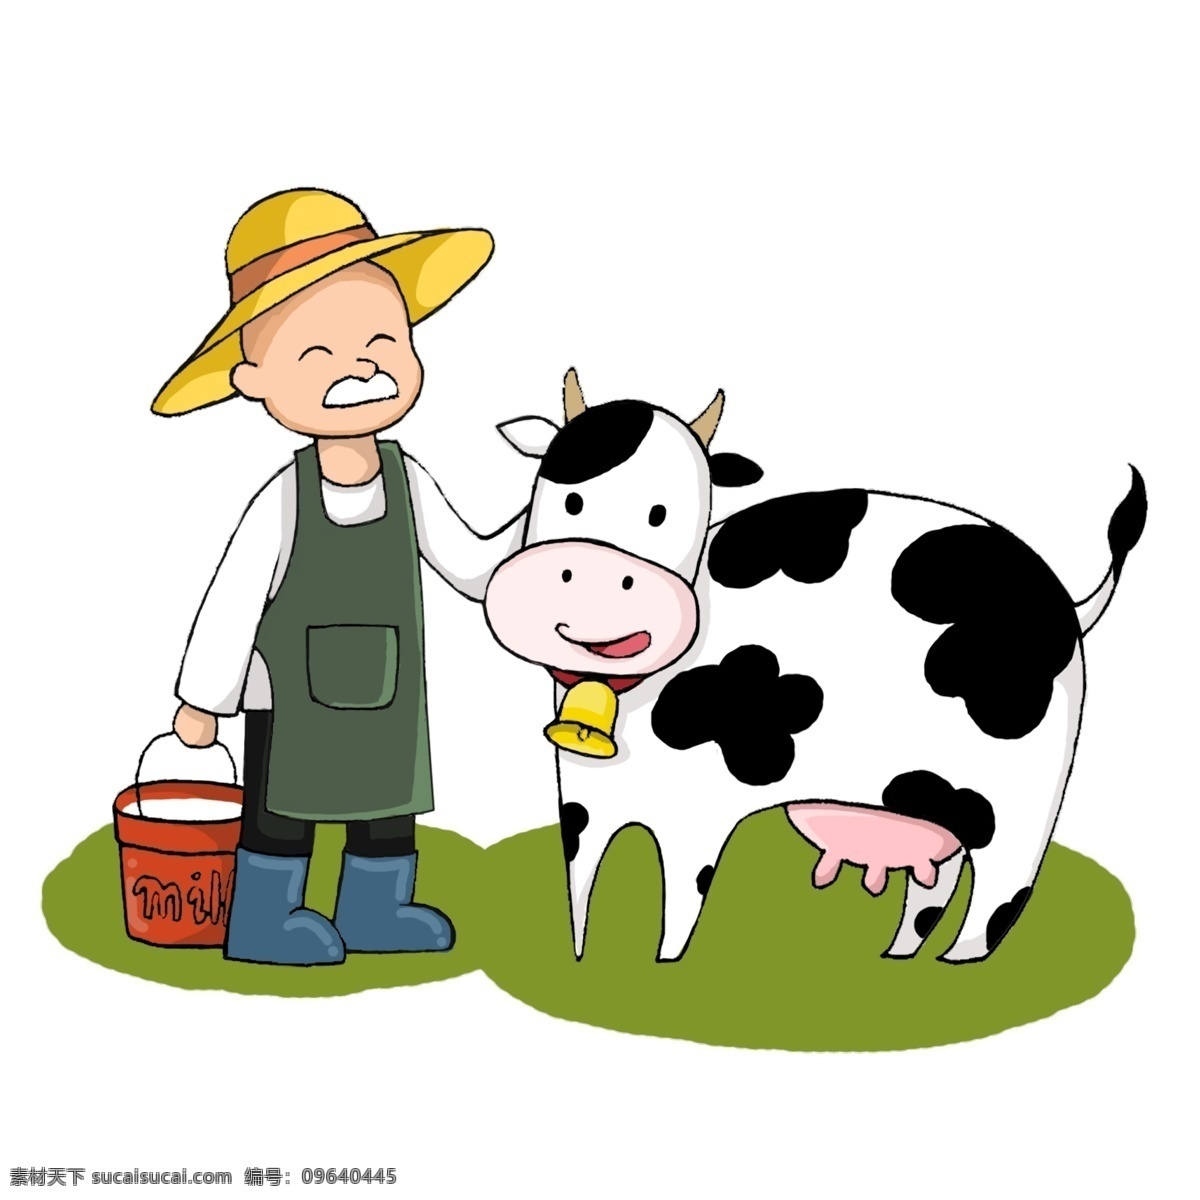 工作 场景 职业 身份 卡通 插画 牧场主 养牛人 教师 学生 老板 清洁工 保洁员 厨师 医生